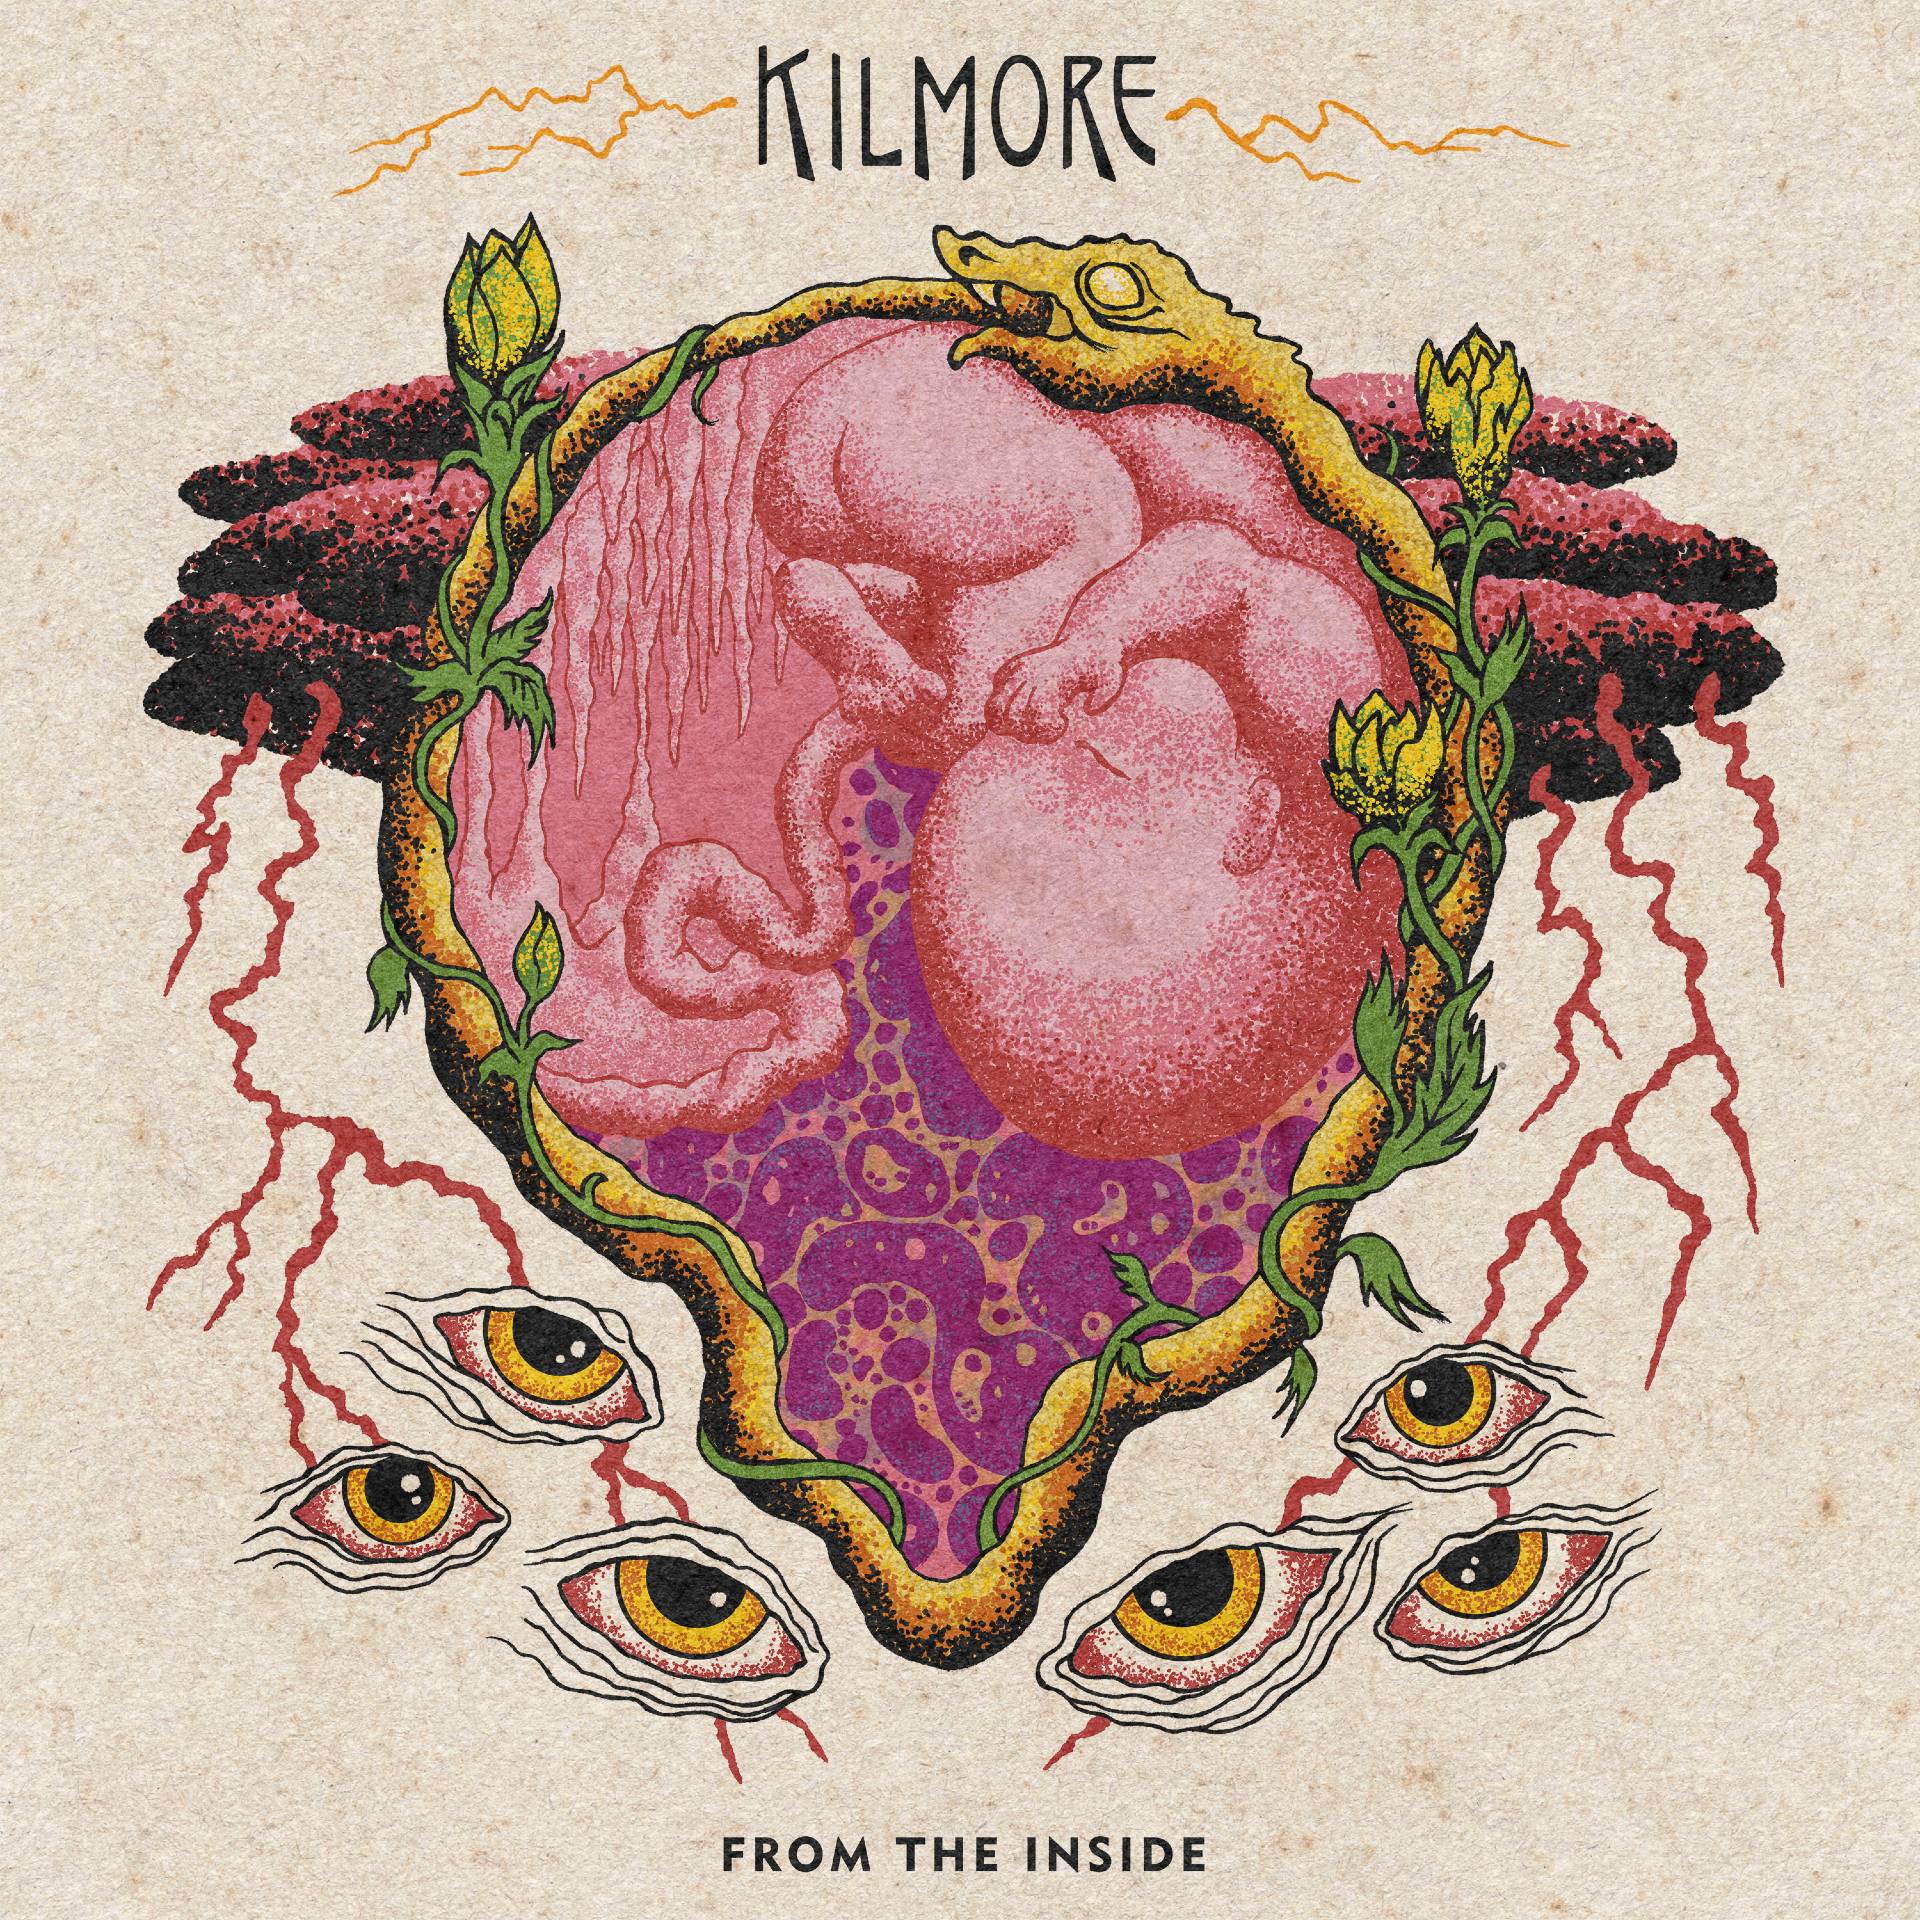 Kilmore ‘From The Inside’ album artwork